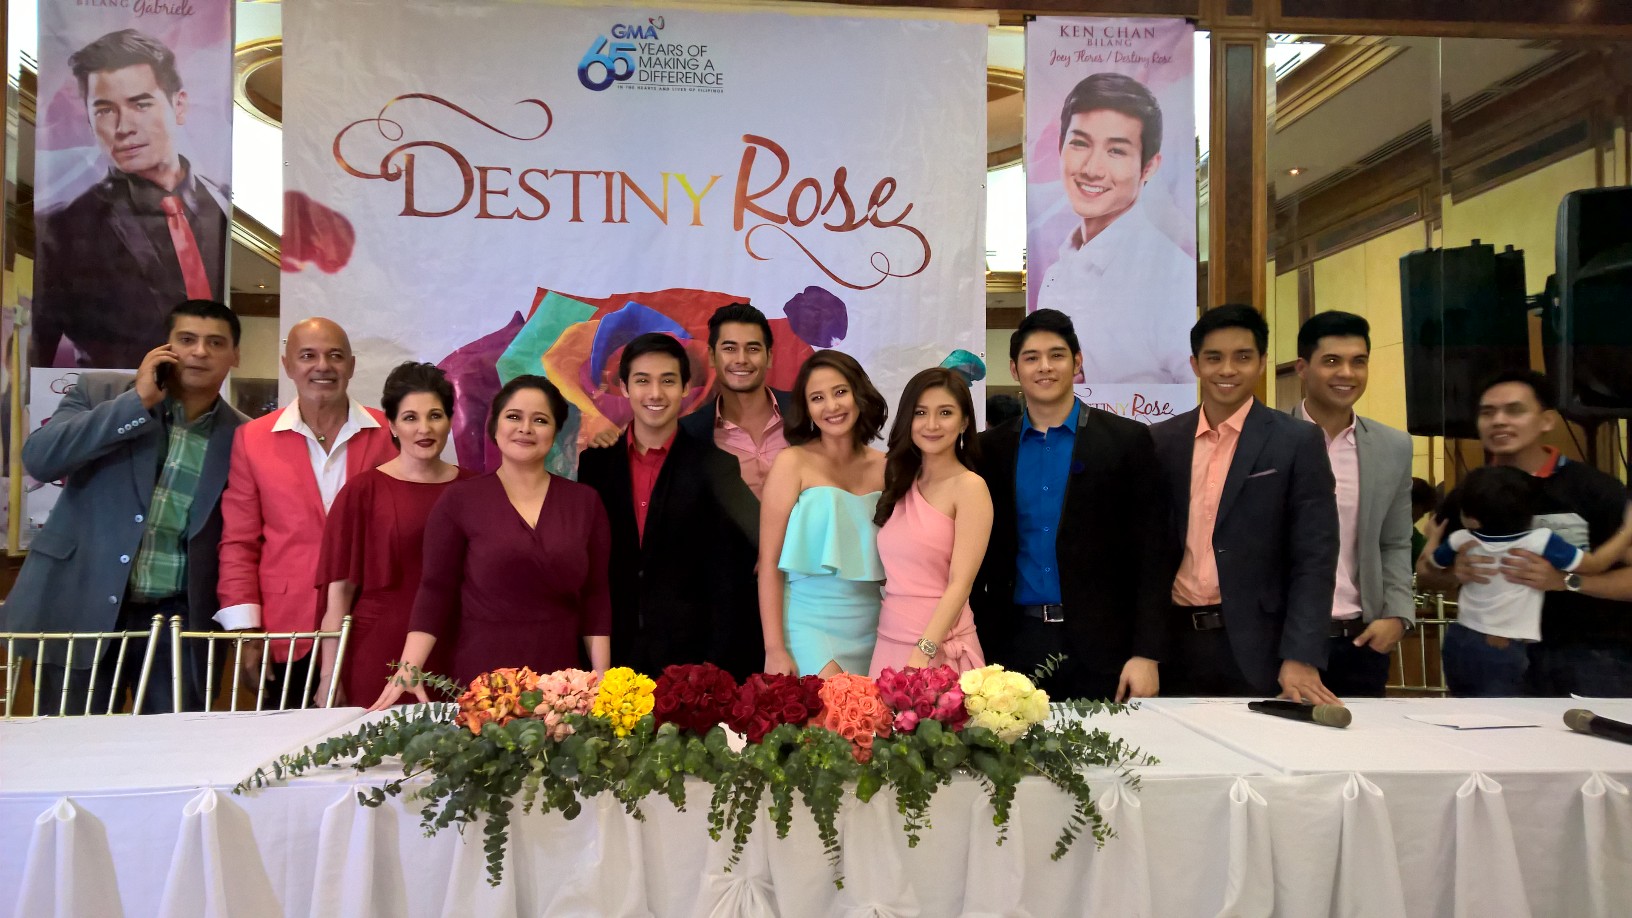 The cast of "Destiny Rose"